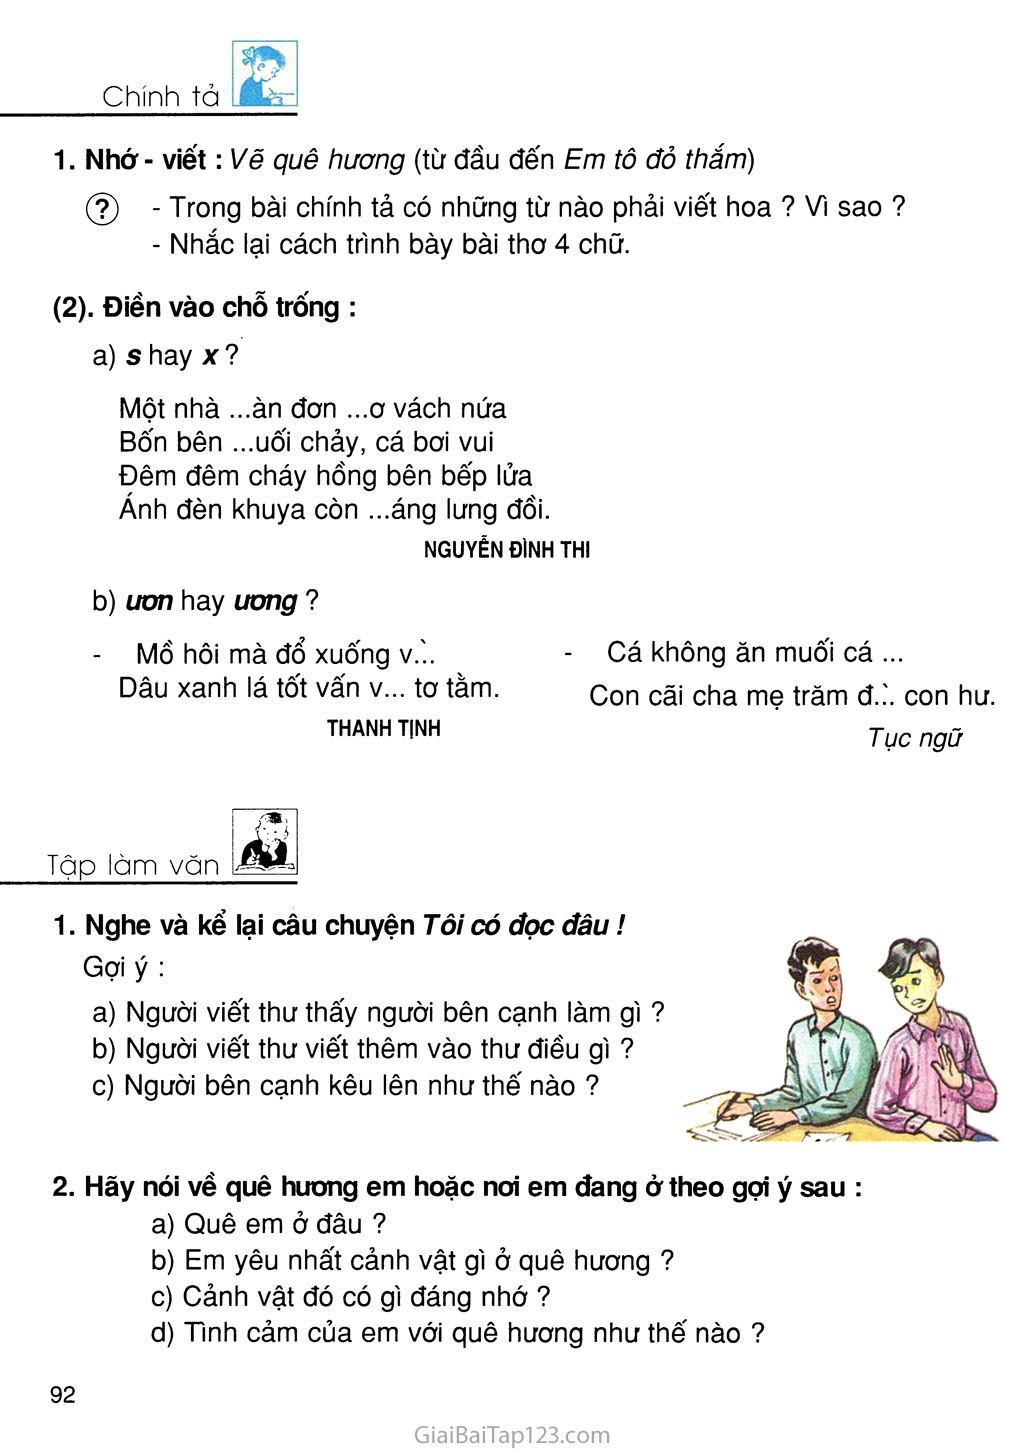 SGK Tiếng Việt 3: Hình ảnh đầy màu sắc trong sách giáo khoa Tiếng Việt lớp 3 sẽ khiến bạn liên tưởng đến những kỷ niệm ngày xưa thật đẹp và ý nghĩa. Cùng xem ngay nhé!